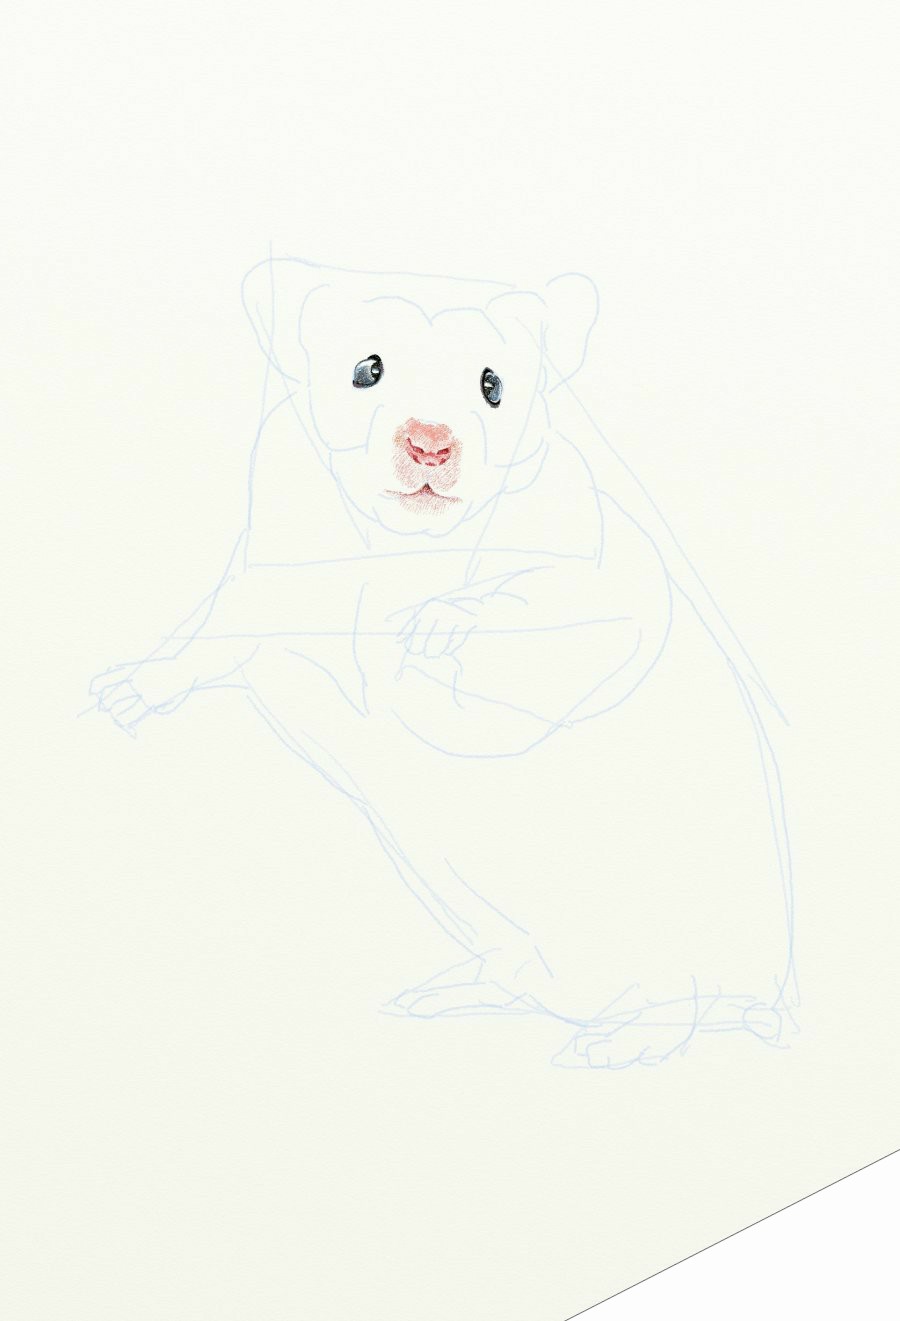 painter绘制一只可爱的老鼠 来客网 painter教程